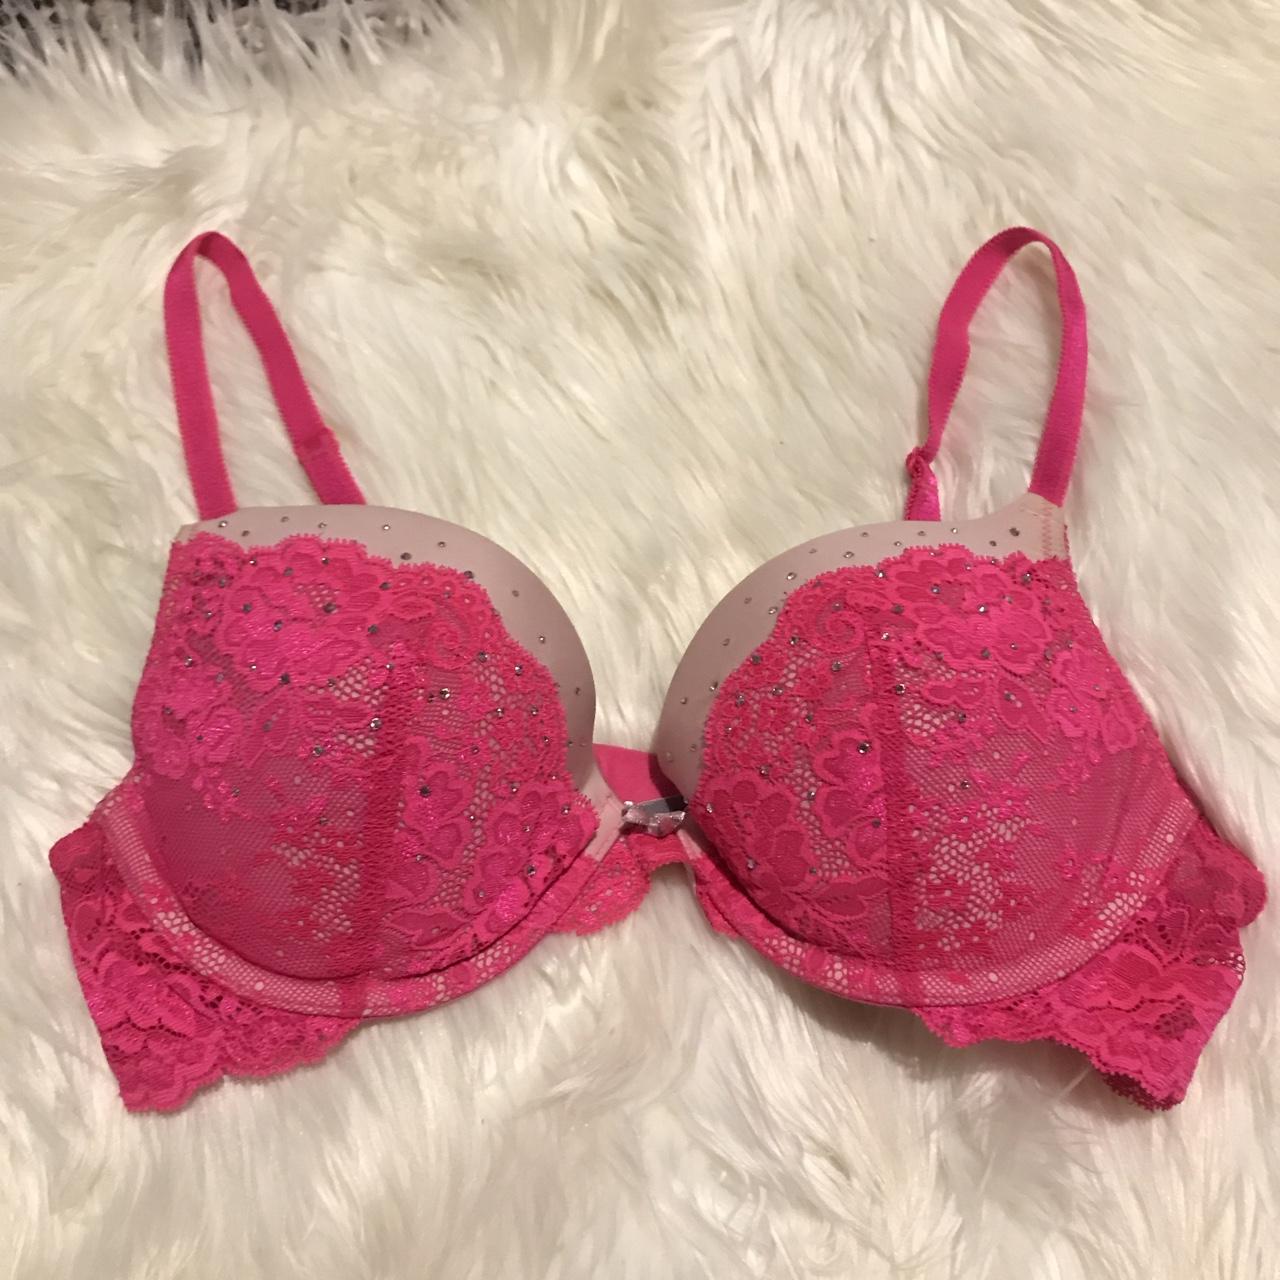 Victoria’s Secret hot pink rhinestone bra in the